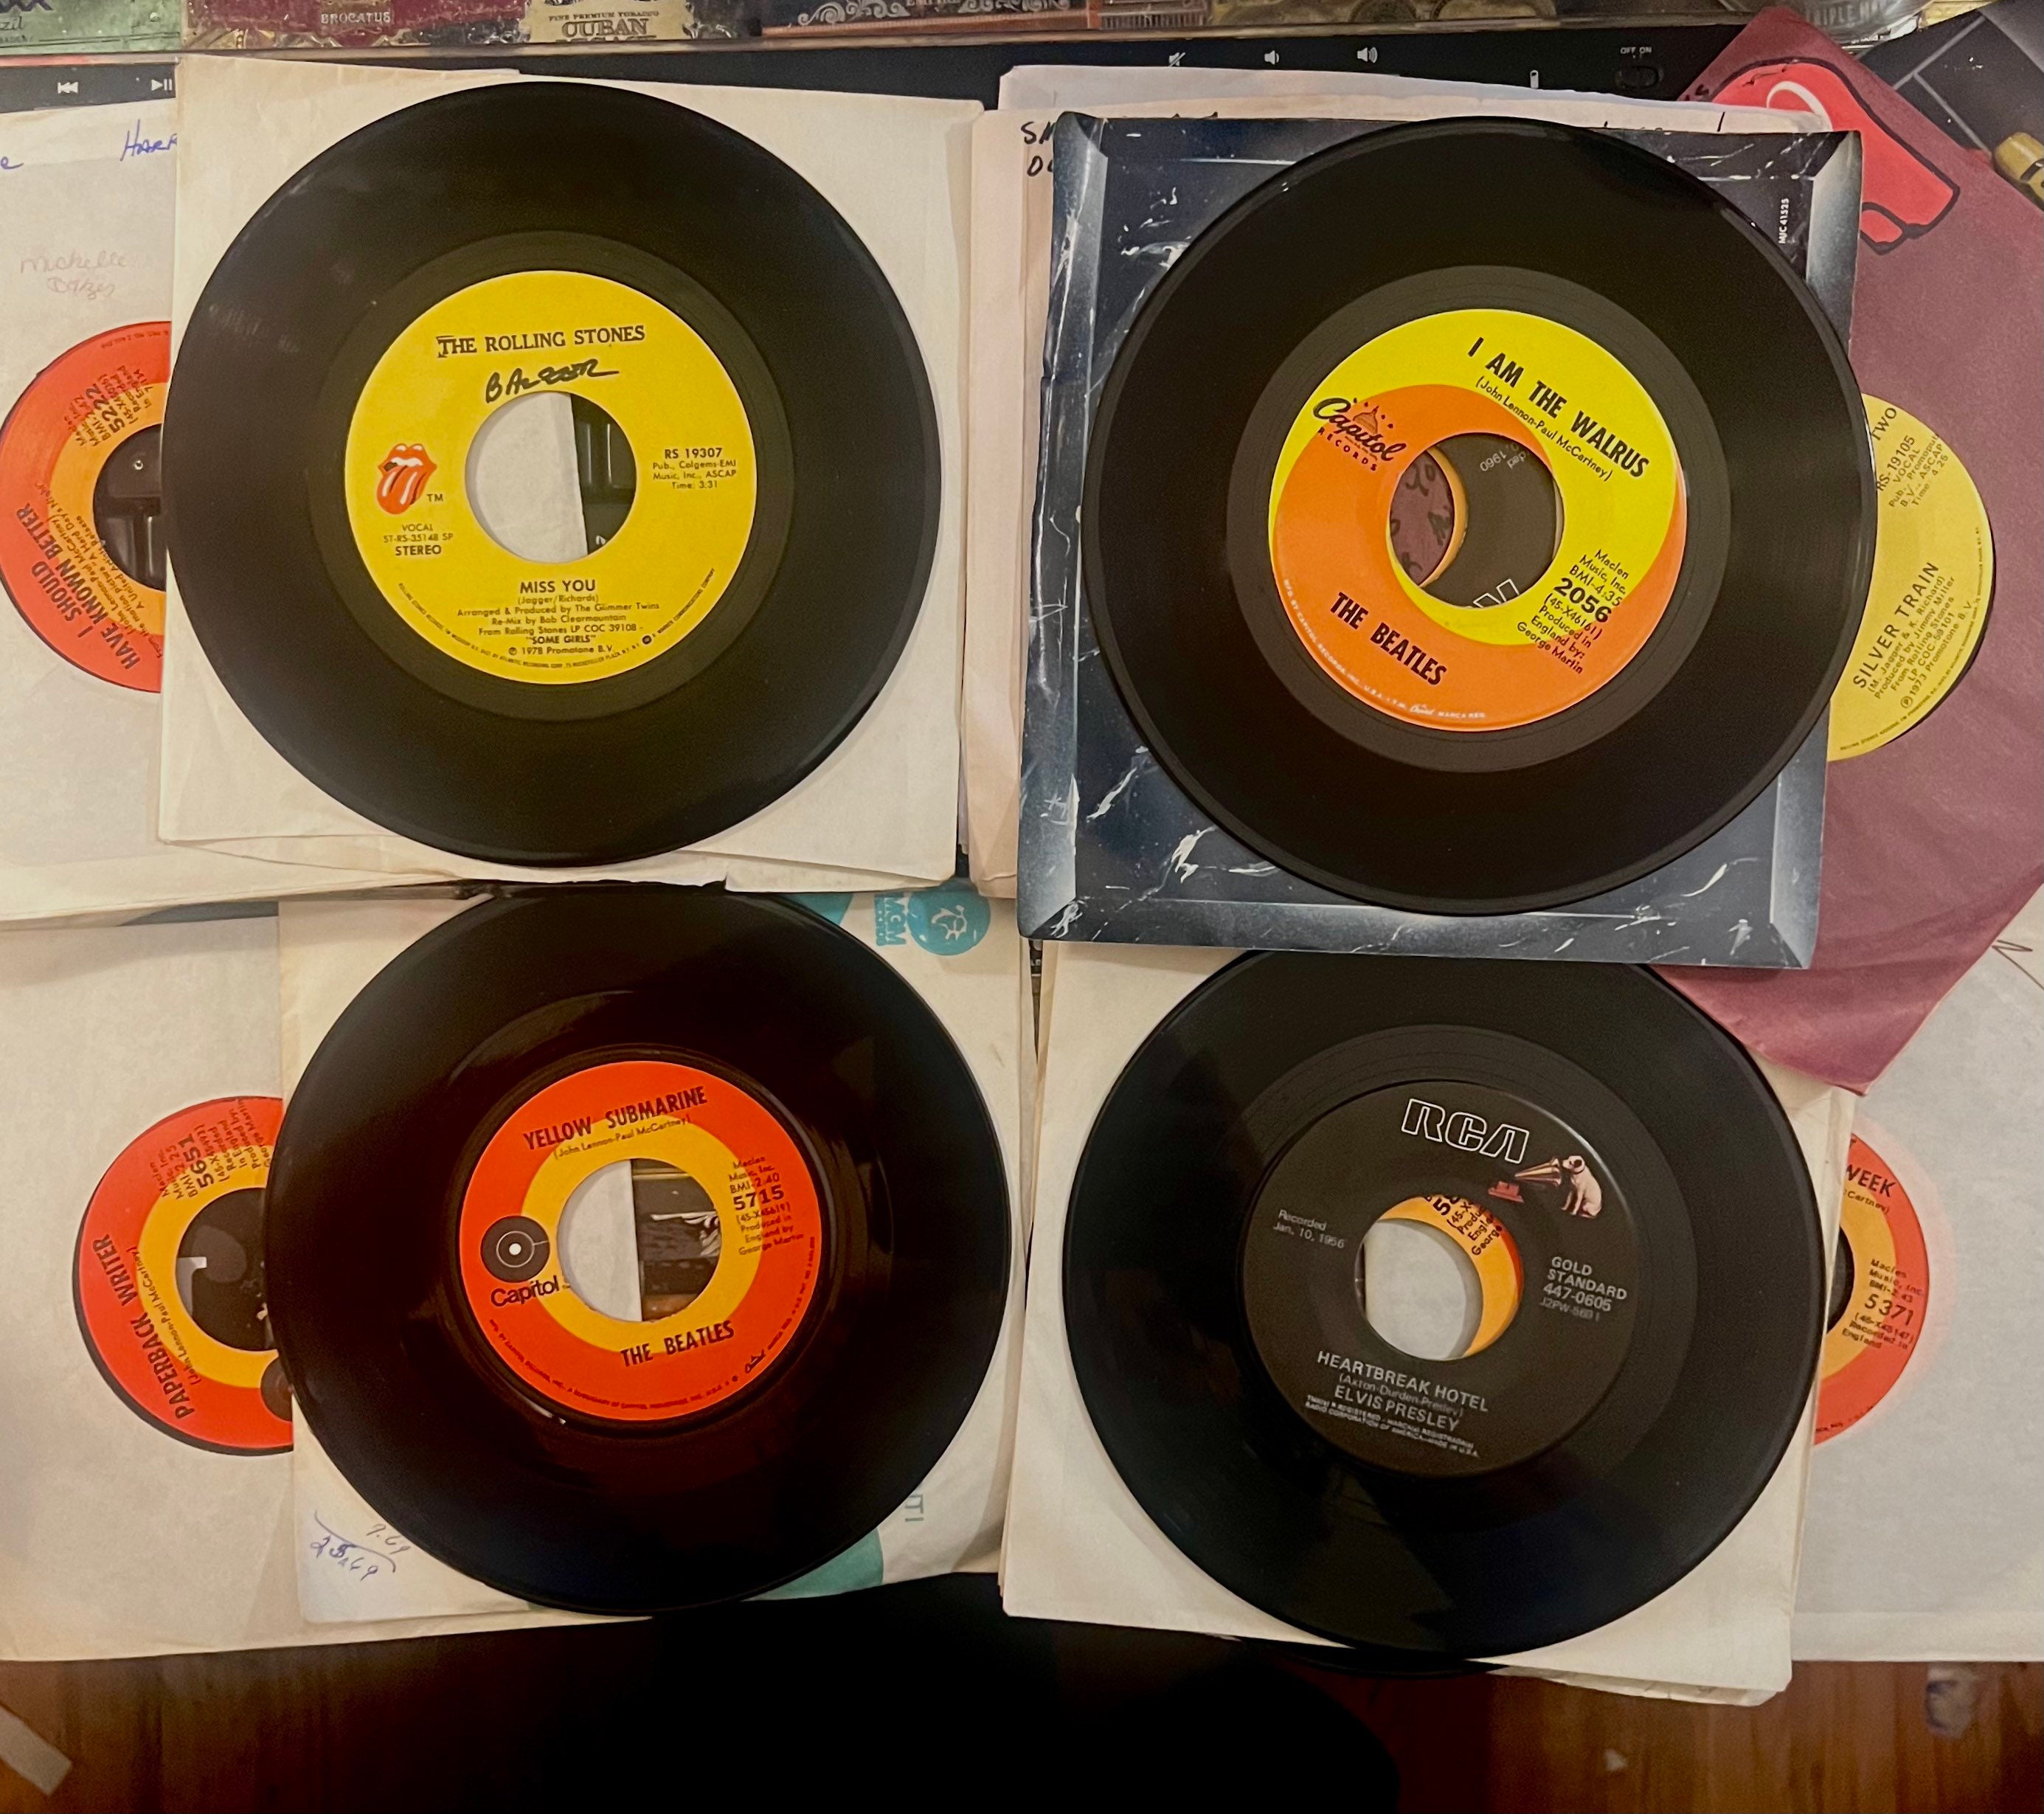 Lote de discos de vinilo antiguos de 7 pulgadas y 45 RPM para decorar o  crear arte de pared LP